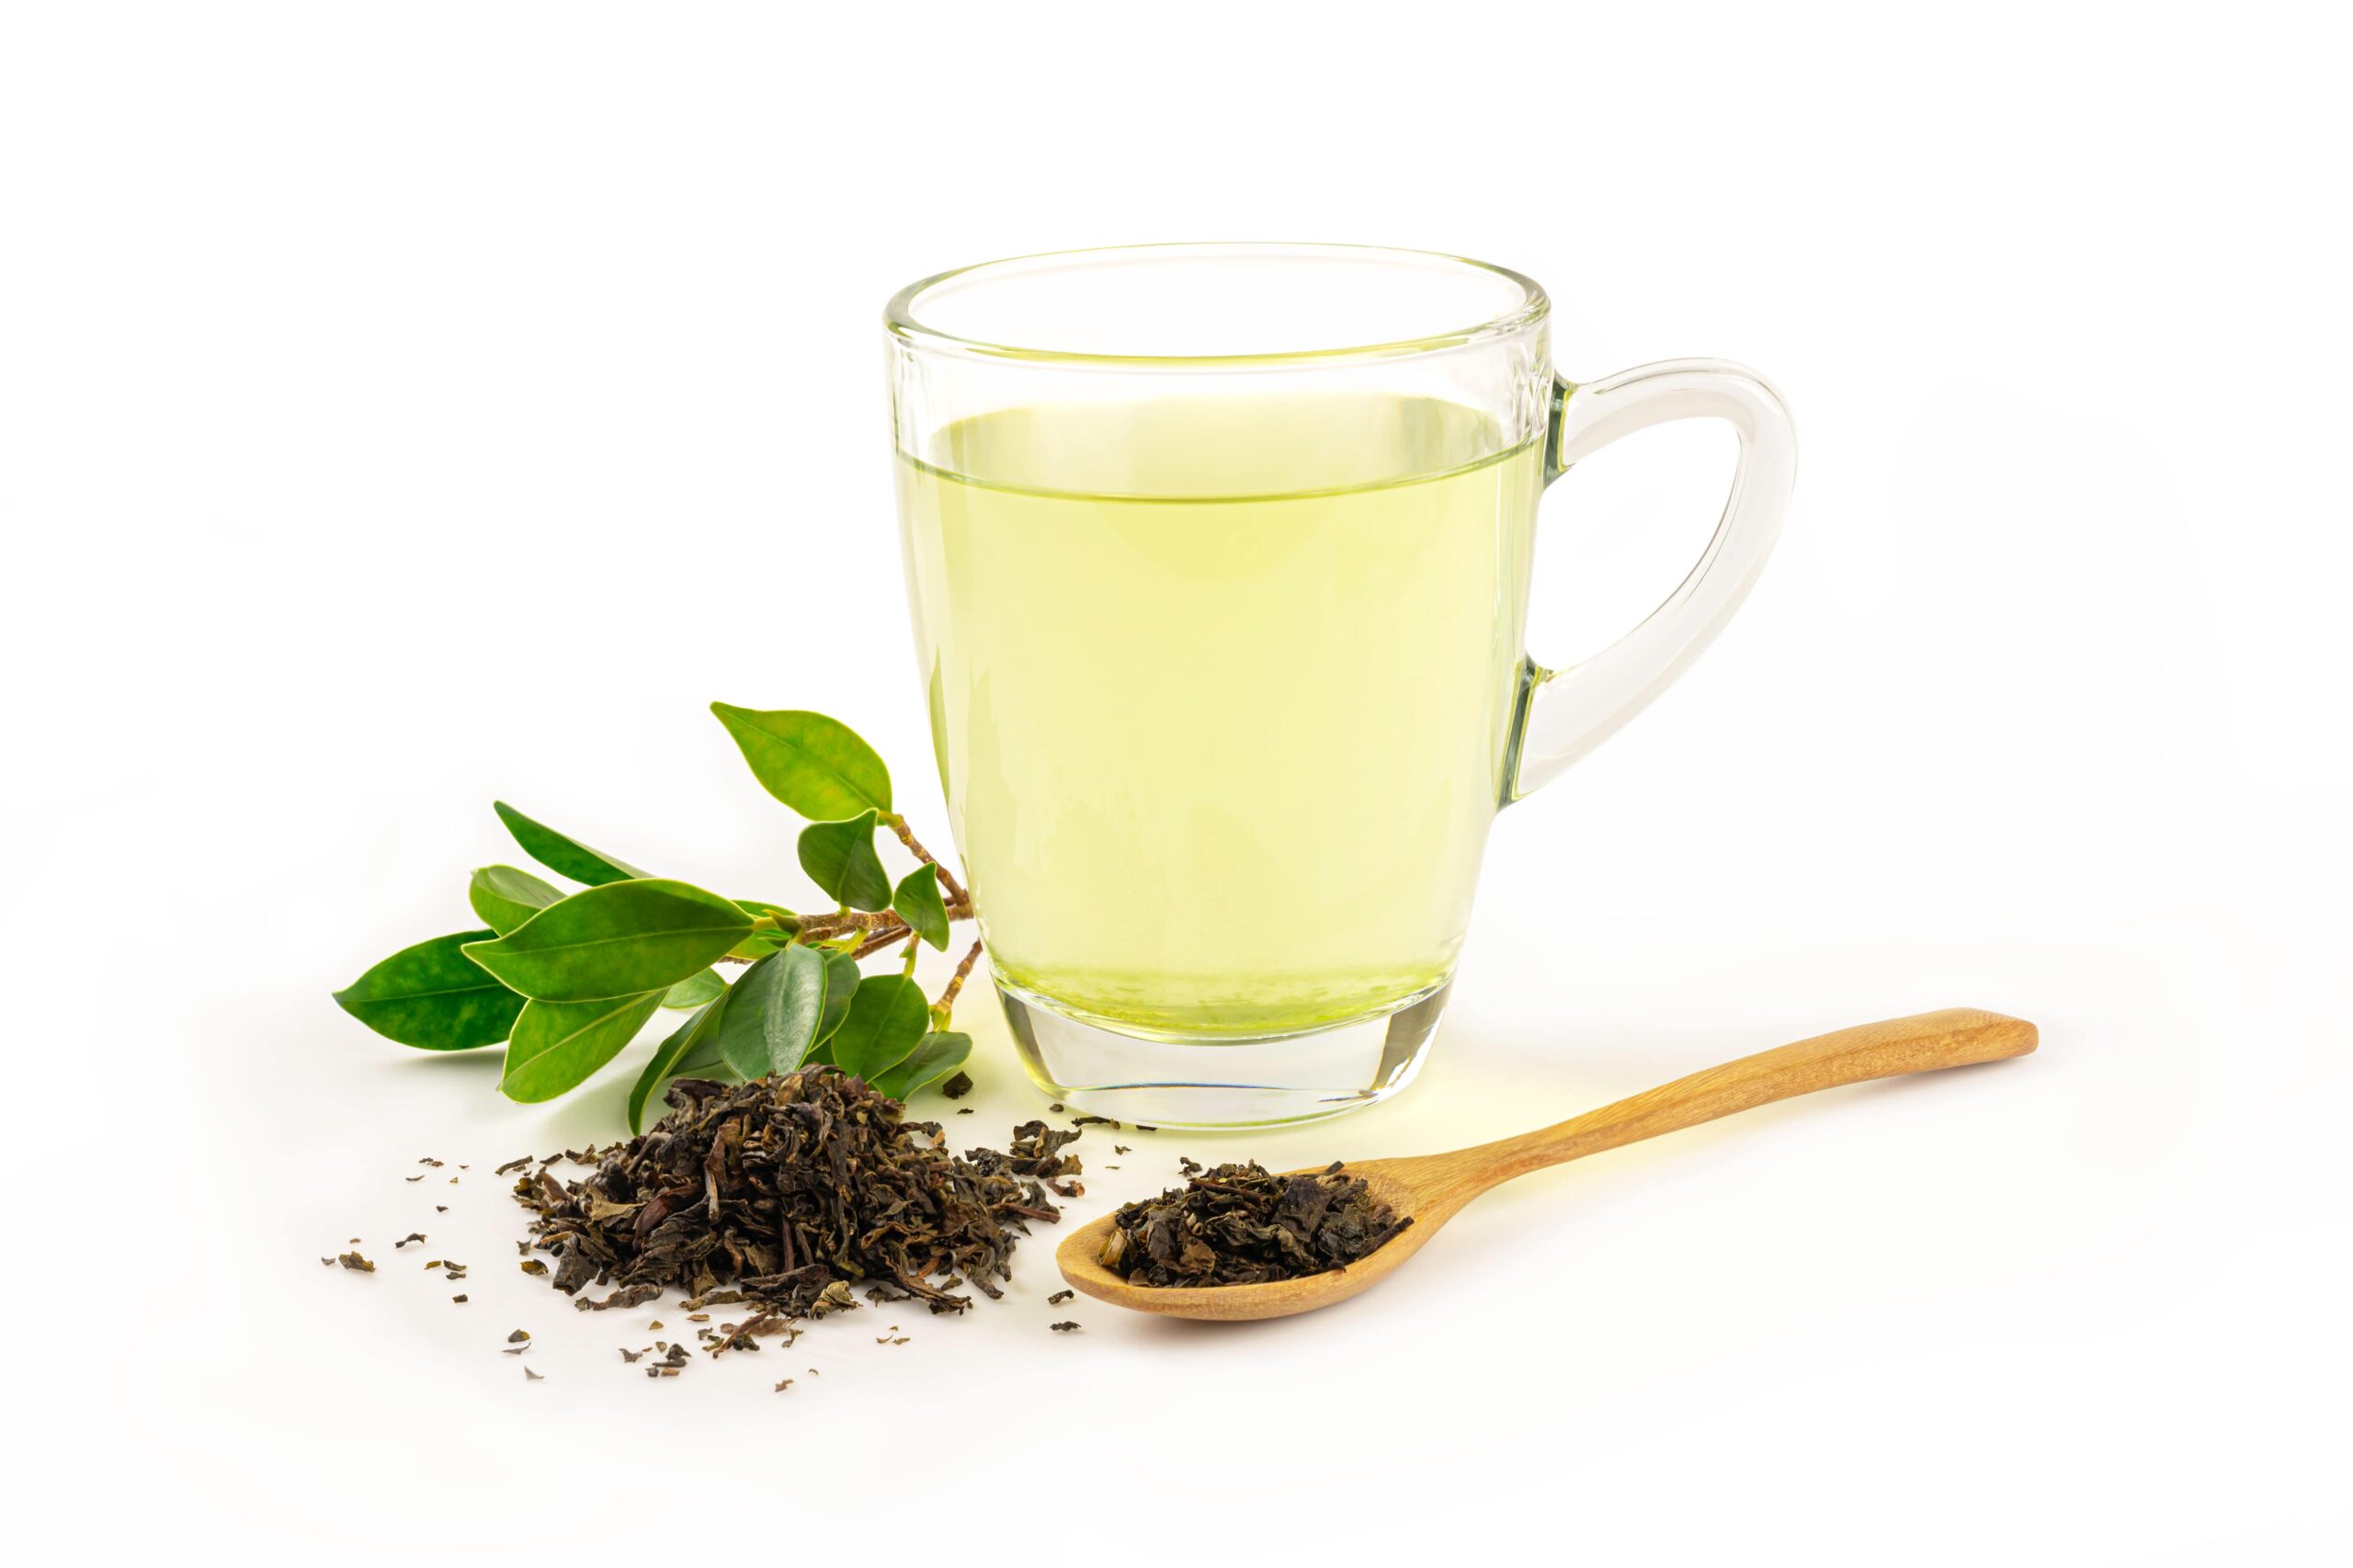 Grüner Tee ist eine in Asien seit langem bekannte Heilpflanze